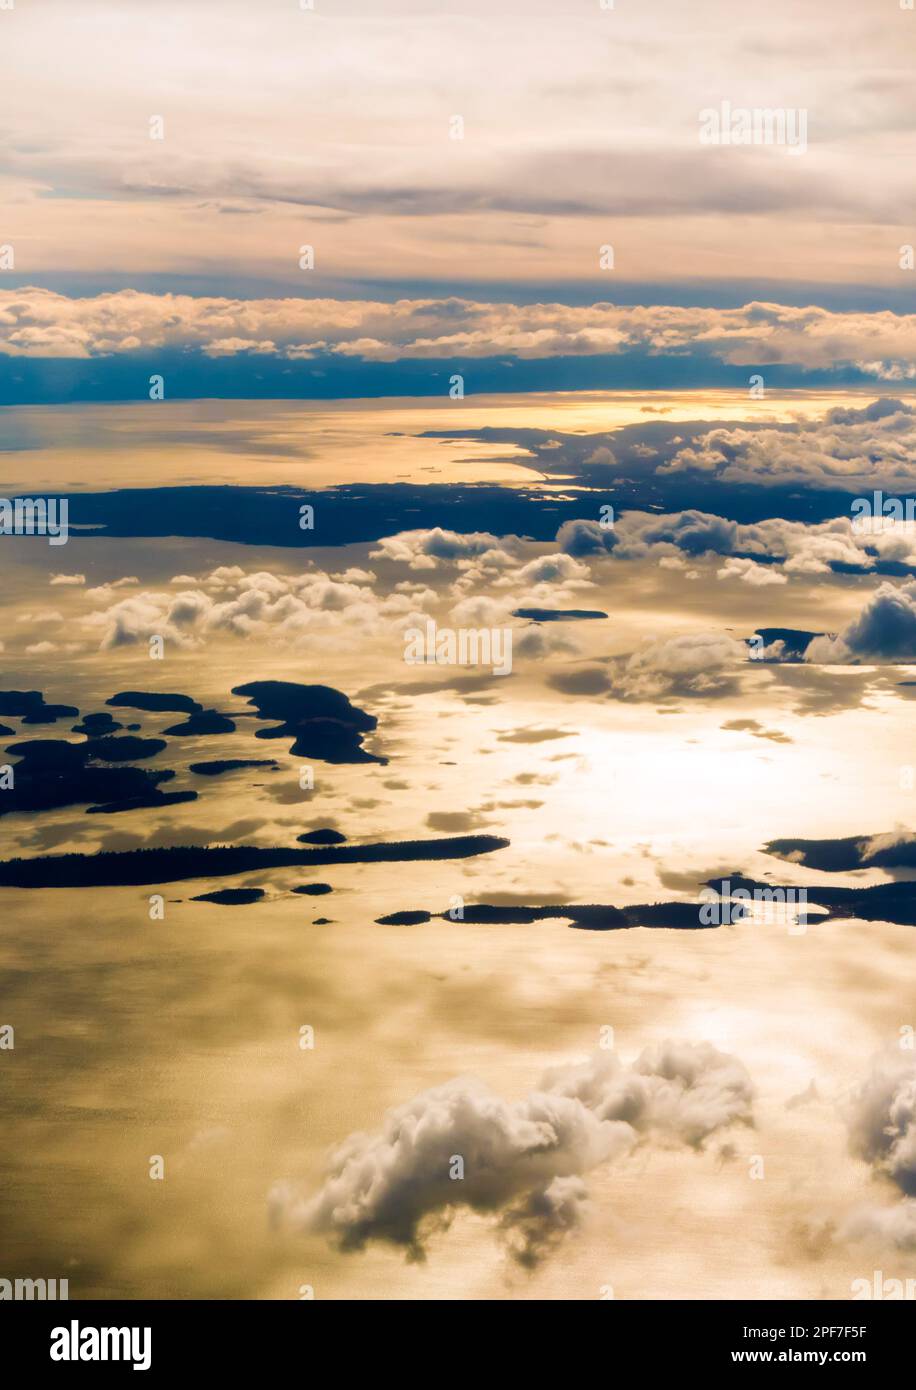 Vue aérienne du paysage marin avec les îles et les nuages au large du Canada Pacifique nord-ouest Banque D'Images